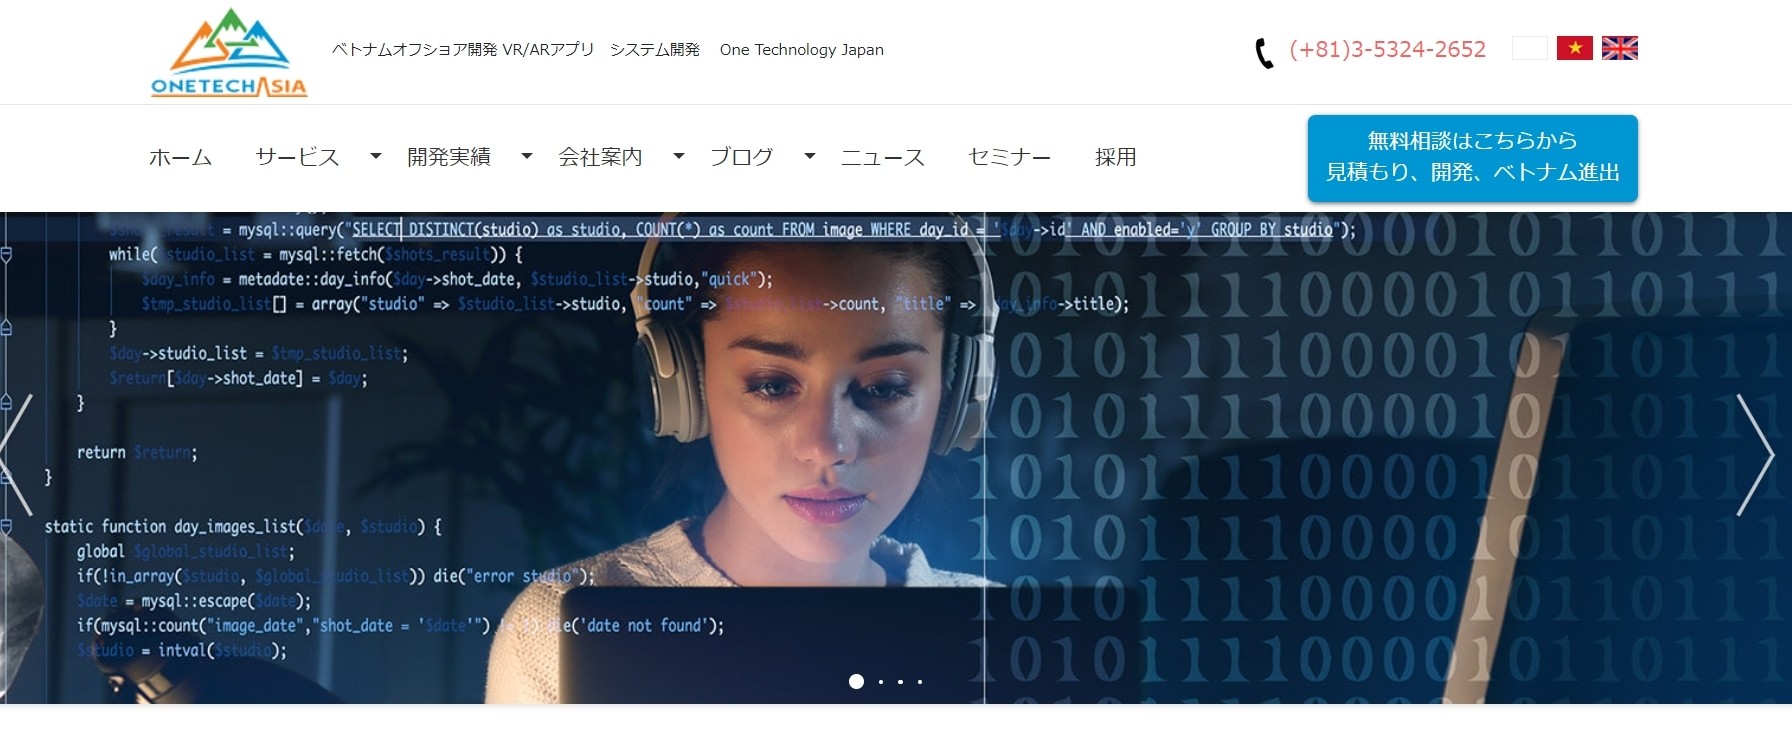 株式会社One Technology Japanの株式会社One Technology Japanサービス